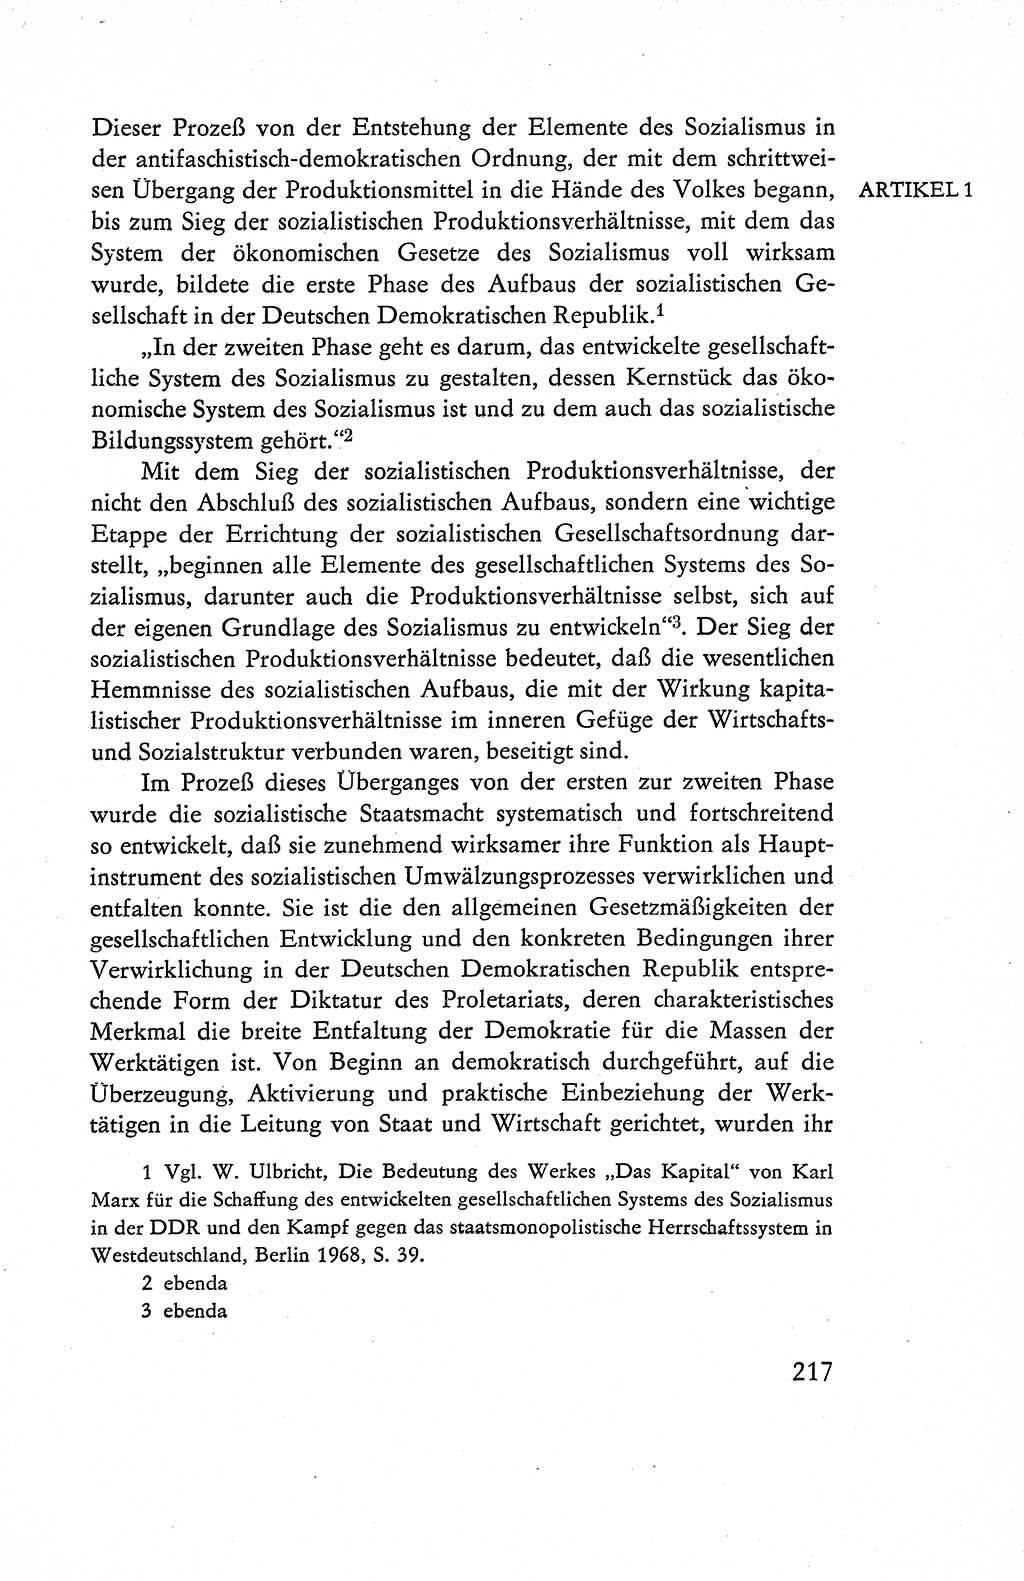 Verfassung der Deutschen Demokratischen Republik (DDR), Dokumente, Kommentar 1969, Band 1, Seite 217 (Verf. DDR Dok. Komm. 1969, Bd. 1, S. 217)